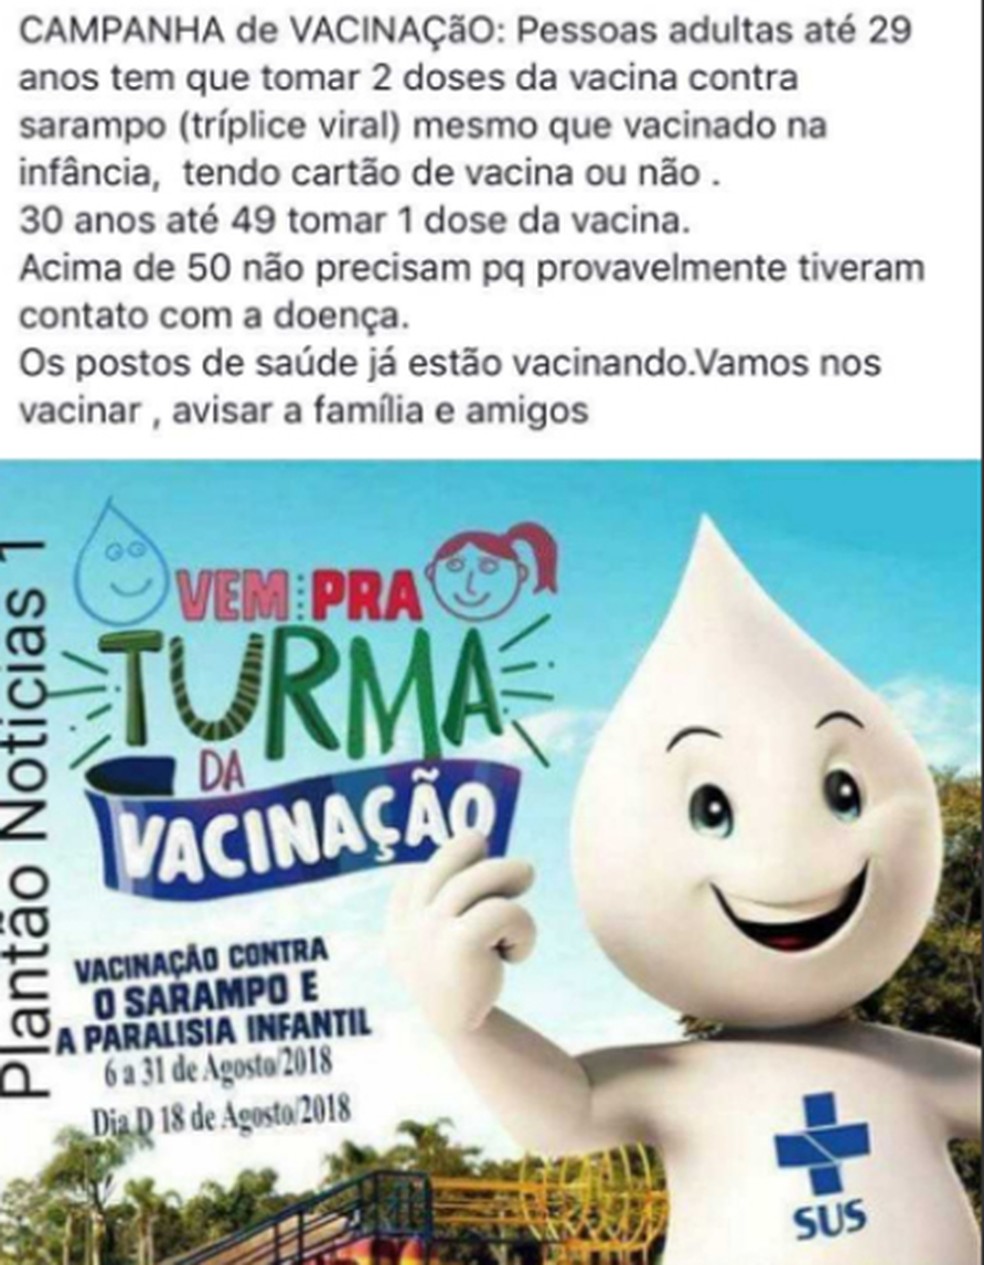 Ministério da Saúde aponta post falso que diz que campanha de vacinação é para adultos  (Foto: Reprodução/ Redes sociais )